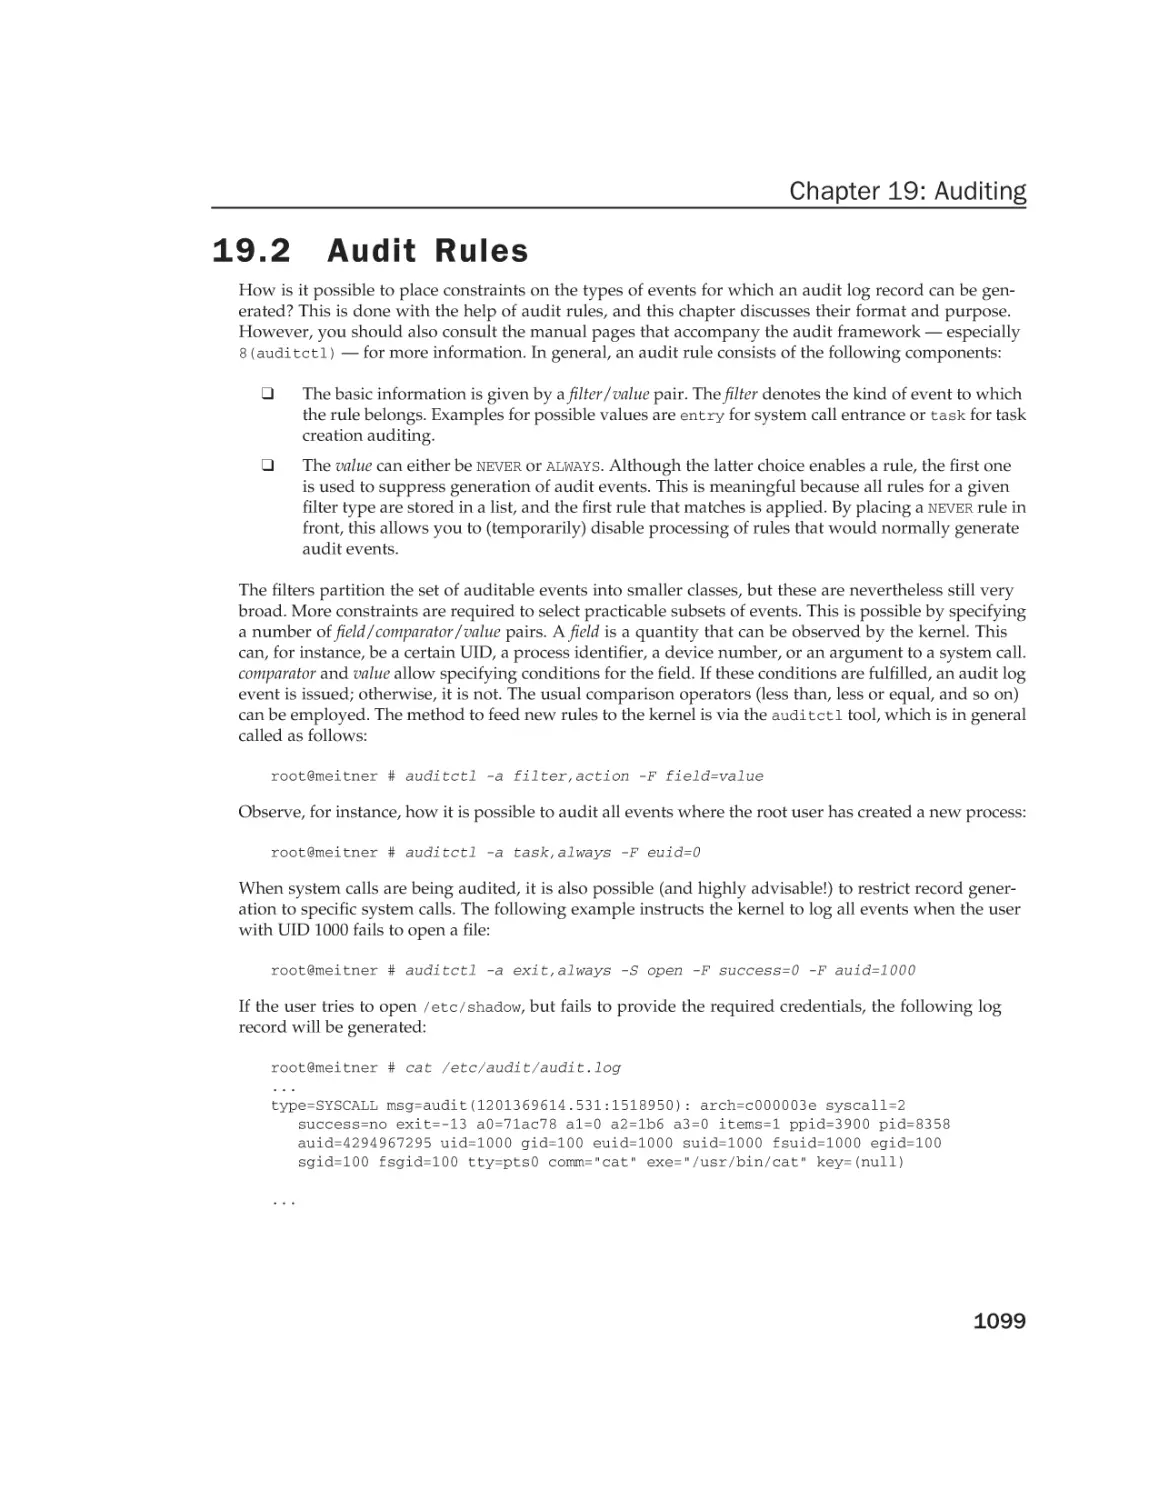 19.2 Audit Rules